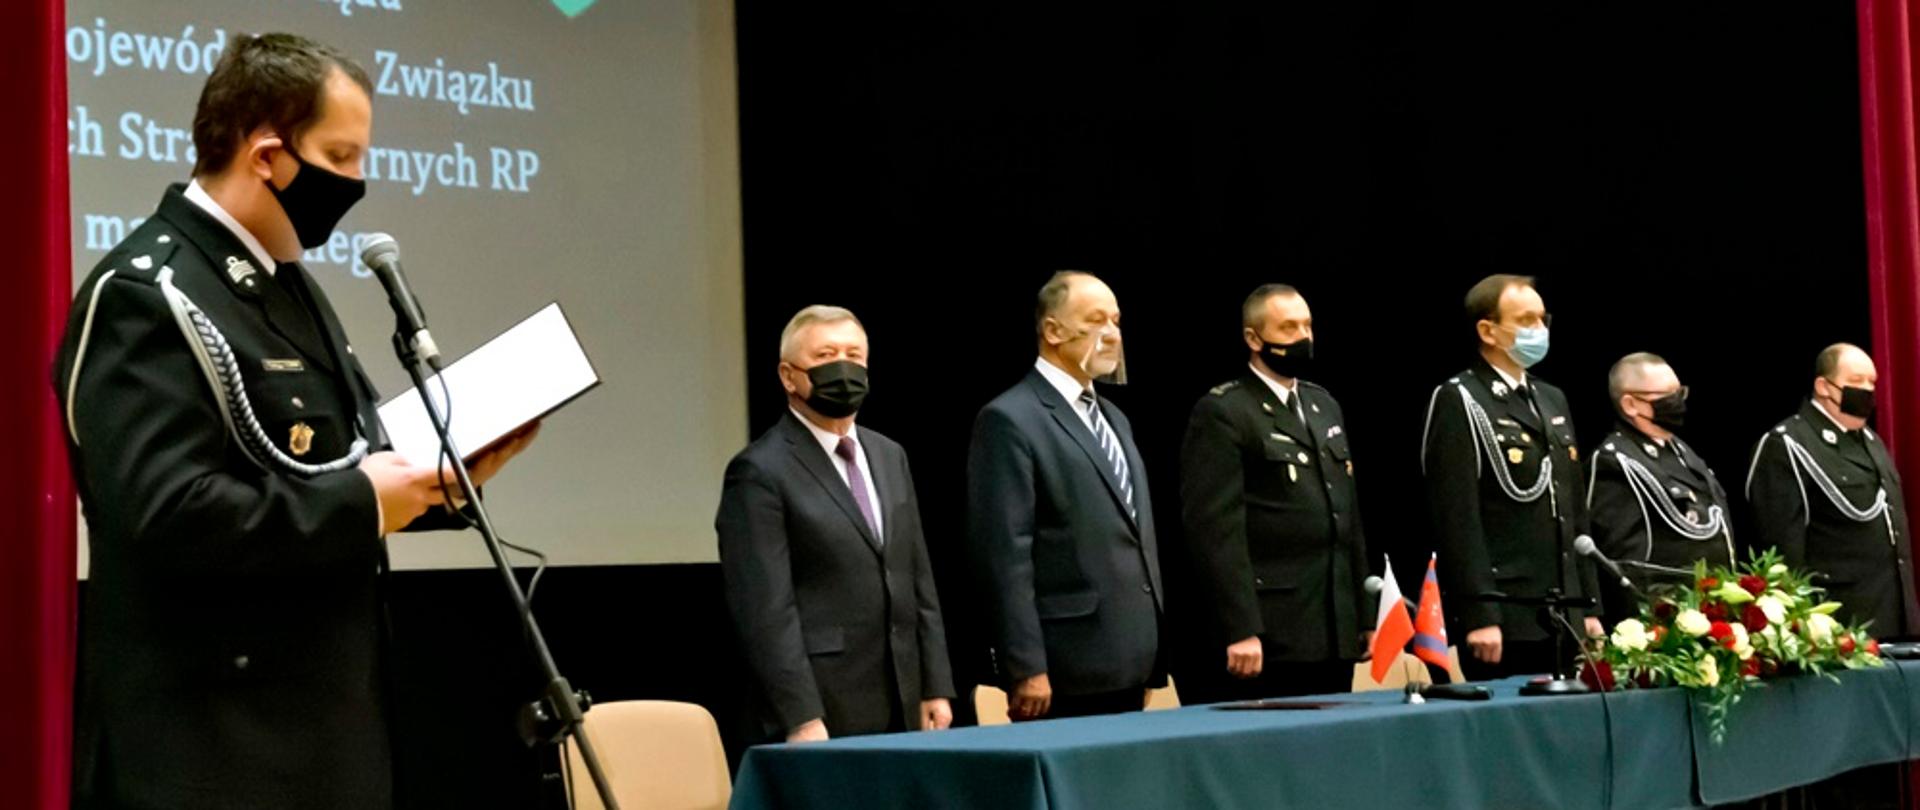 Osoby uczestniczące w posiedzeniu Zarządu OSP. Wszyscy ubrani na galowo. Z lewej strony jedna osoba stoi przy mikrofonie i odczytuje przemówienie.